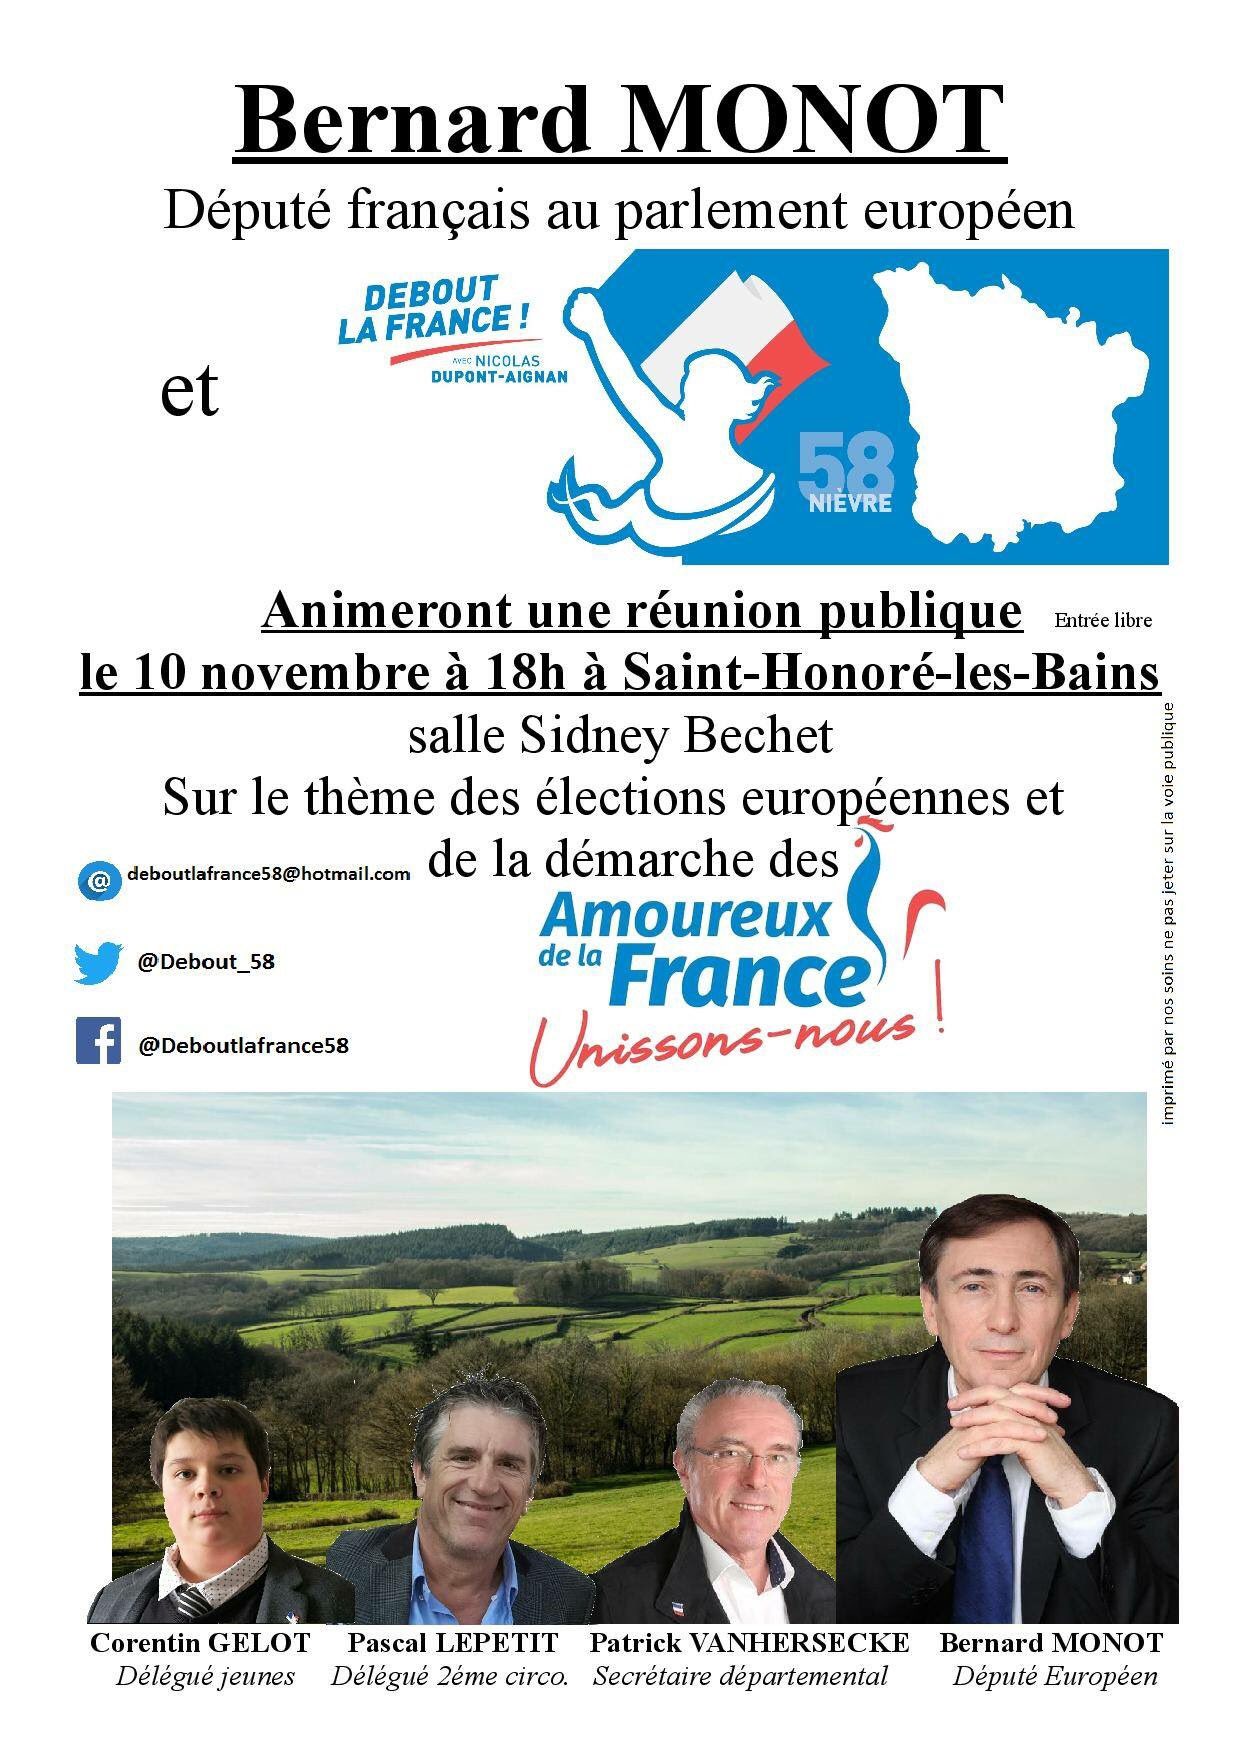 Pascal Lepetit on X: Saint Honoré les Bains est très honorée d'accueillir  @Bernard_Monot, Député français au Parlement européen dans le cadre des  élections européennes : réunion publique à 18 heures le Samedi